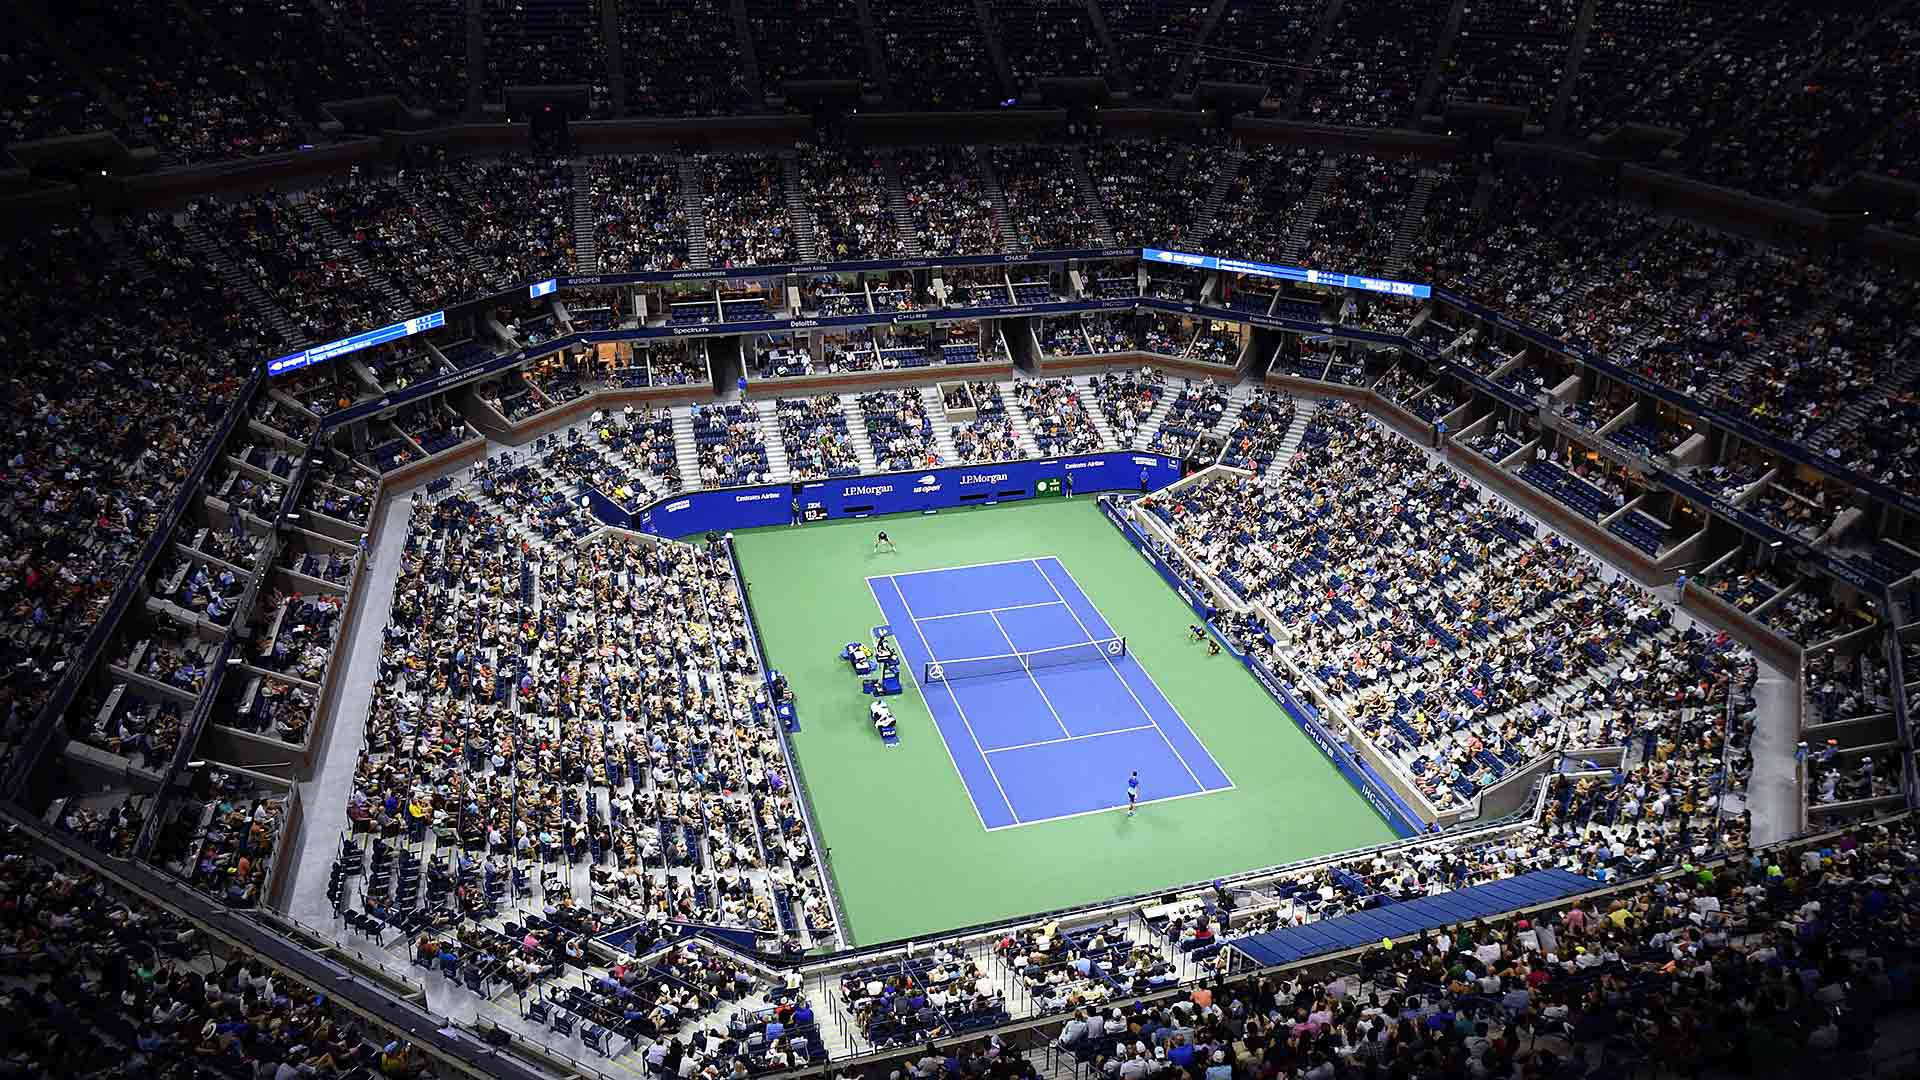 Usopen Tennis Arena - Us Open Tennisarena Wallpaper